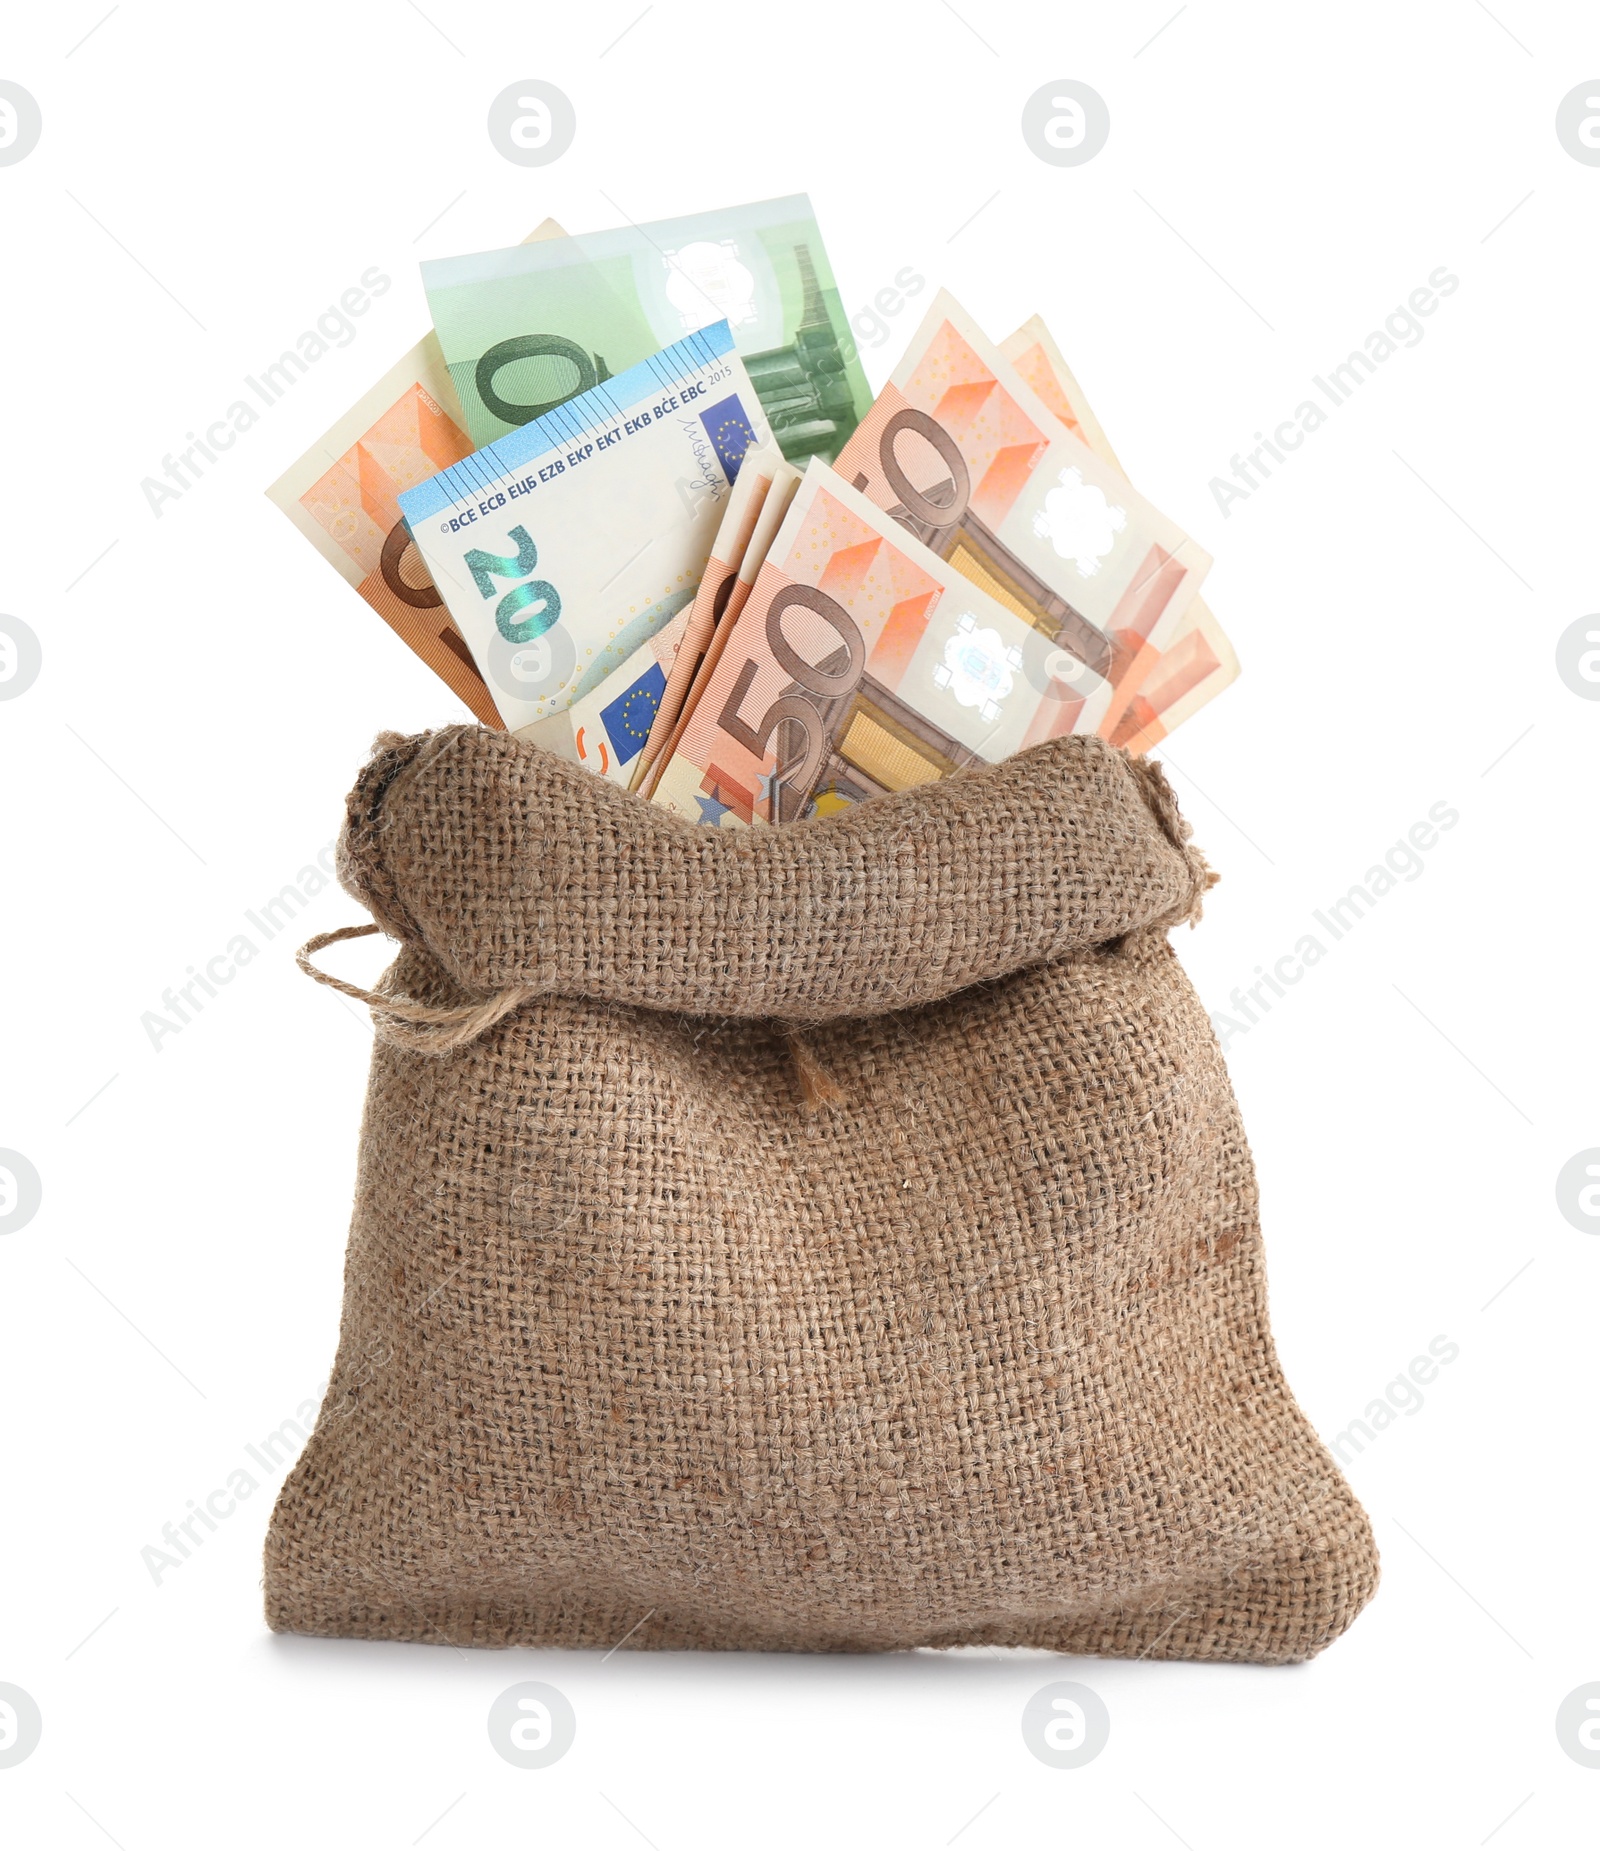 Photo of Sack full of money isolated on white